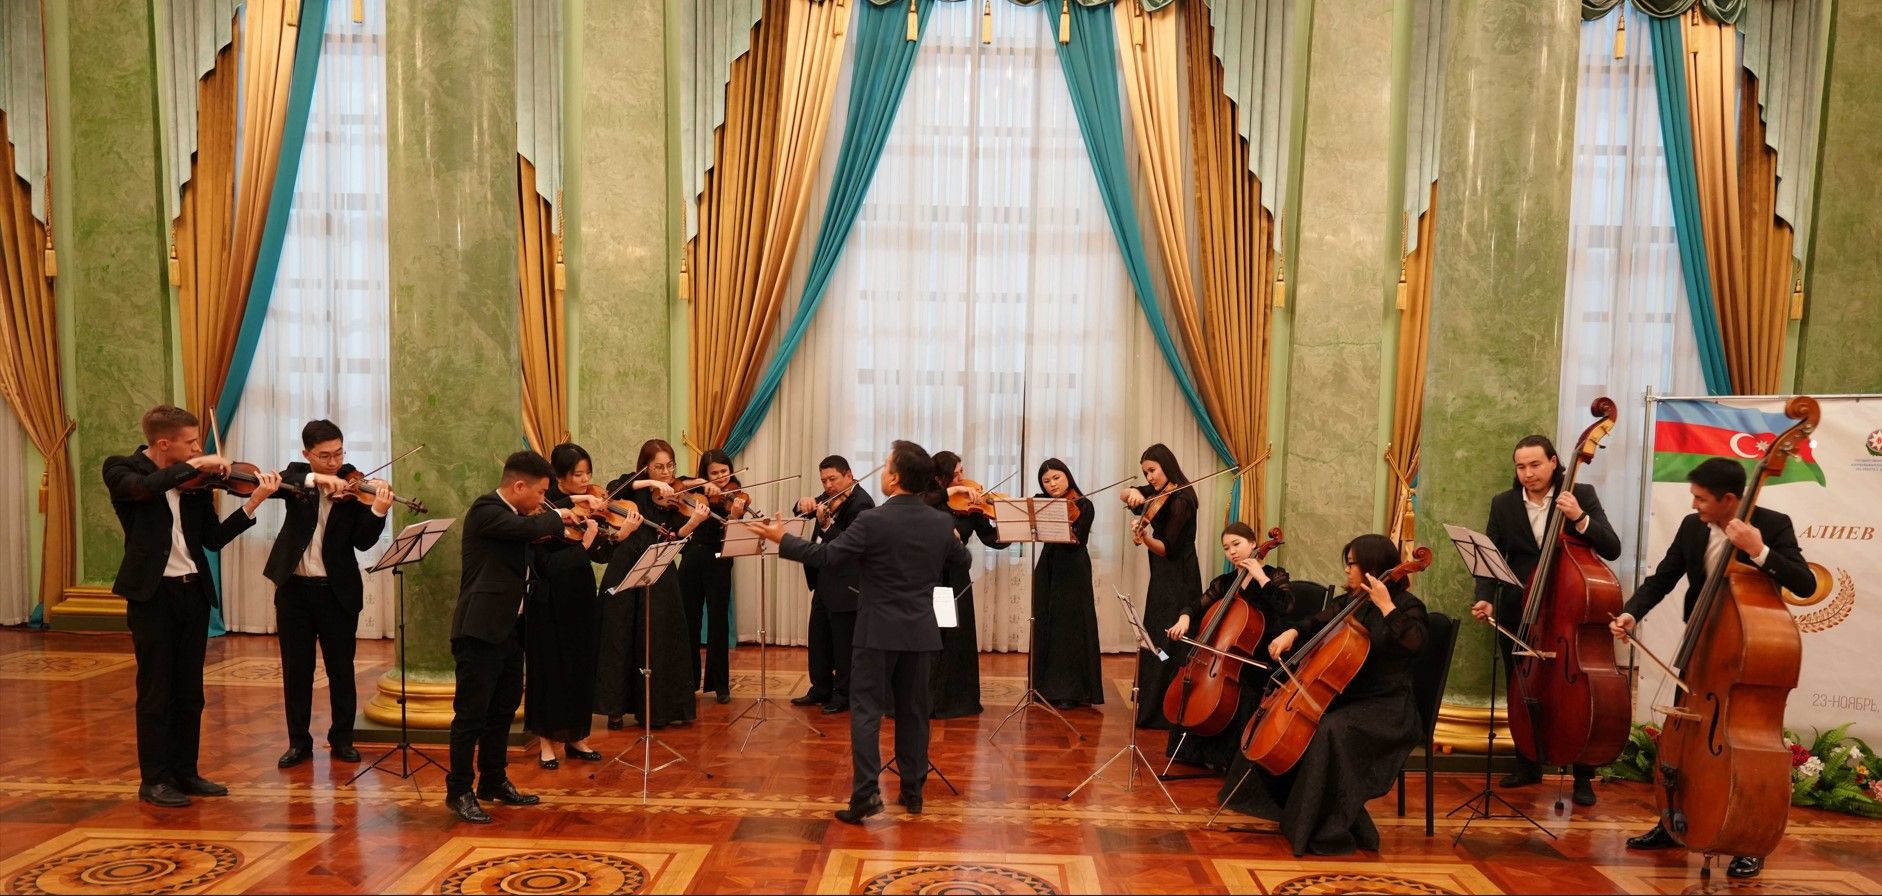 B Бишкеке состоялся торжественный концерт по случаю 100-летнего юбилея Гейдара Алиева 